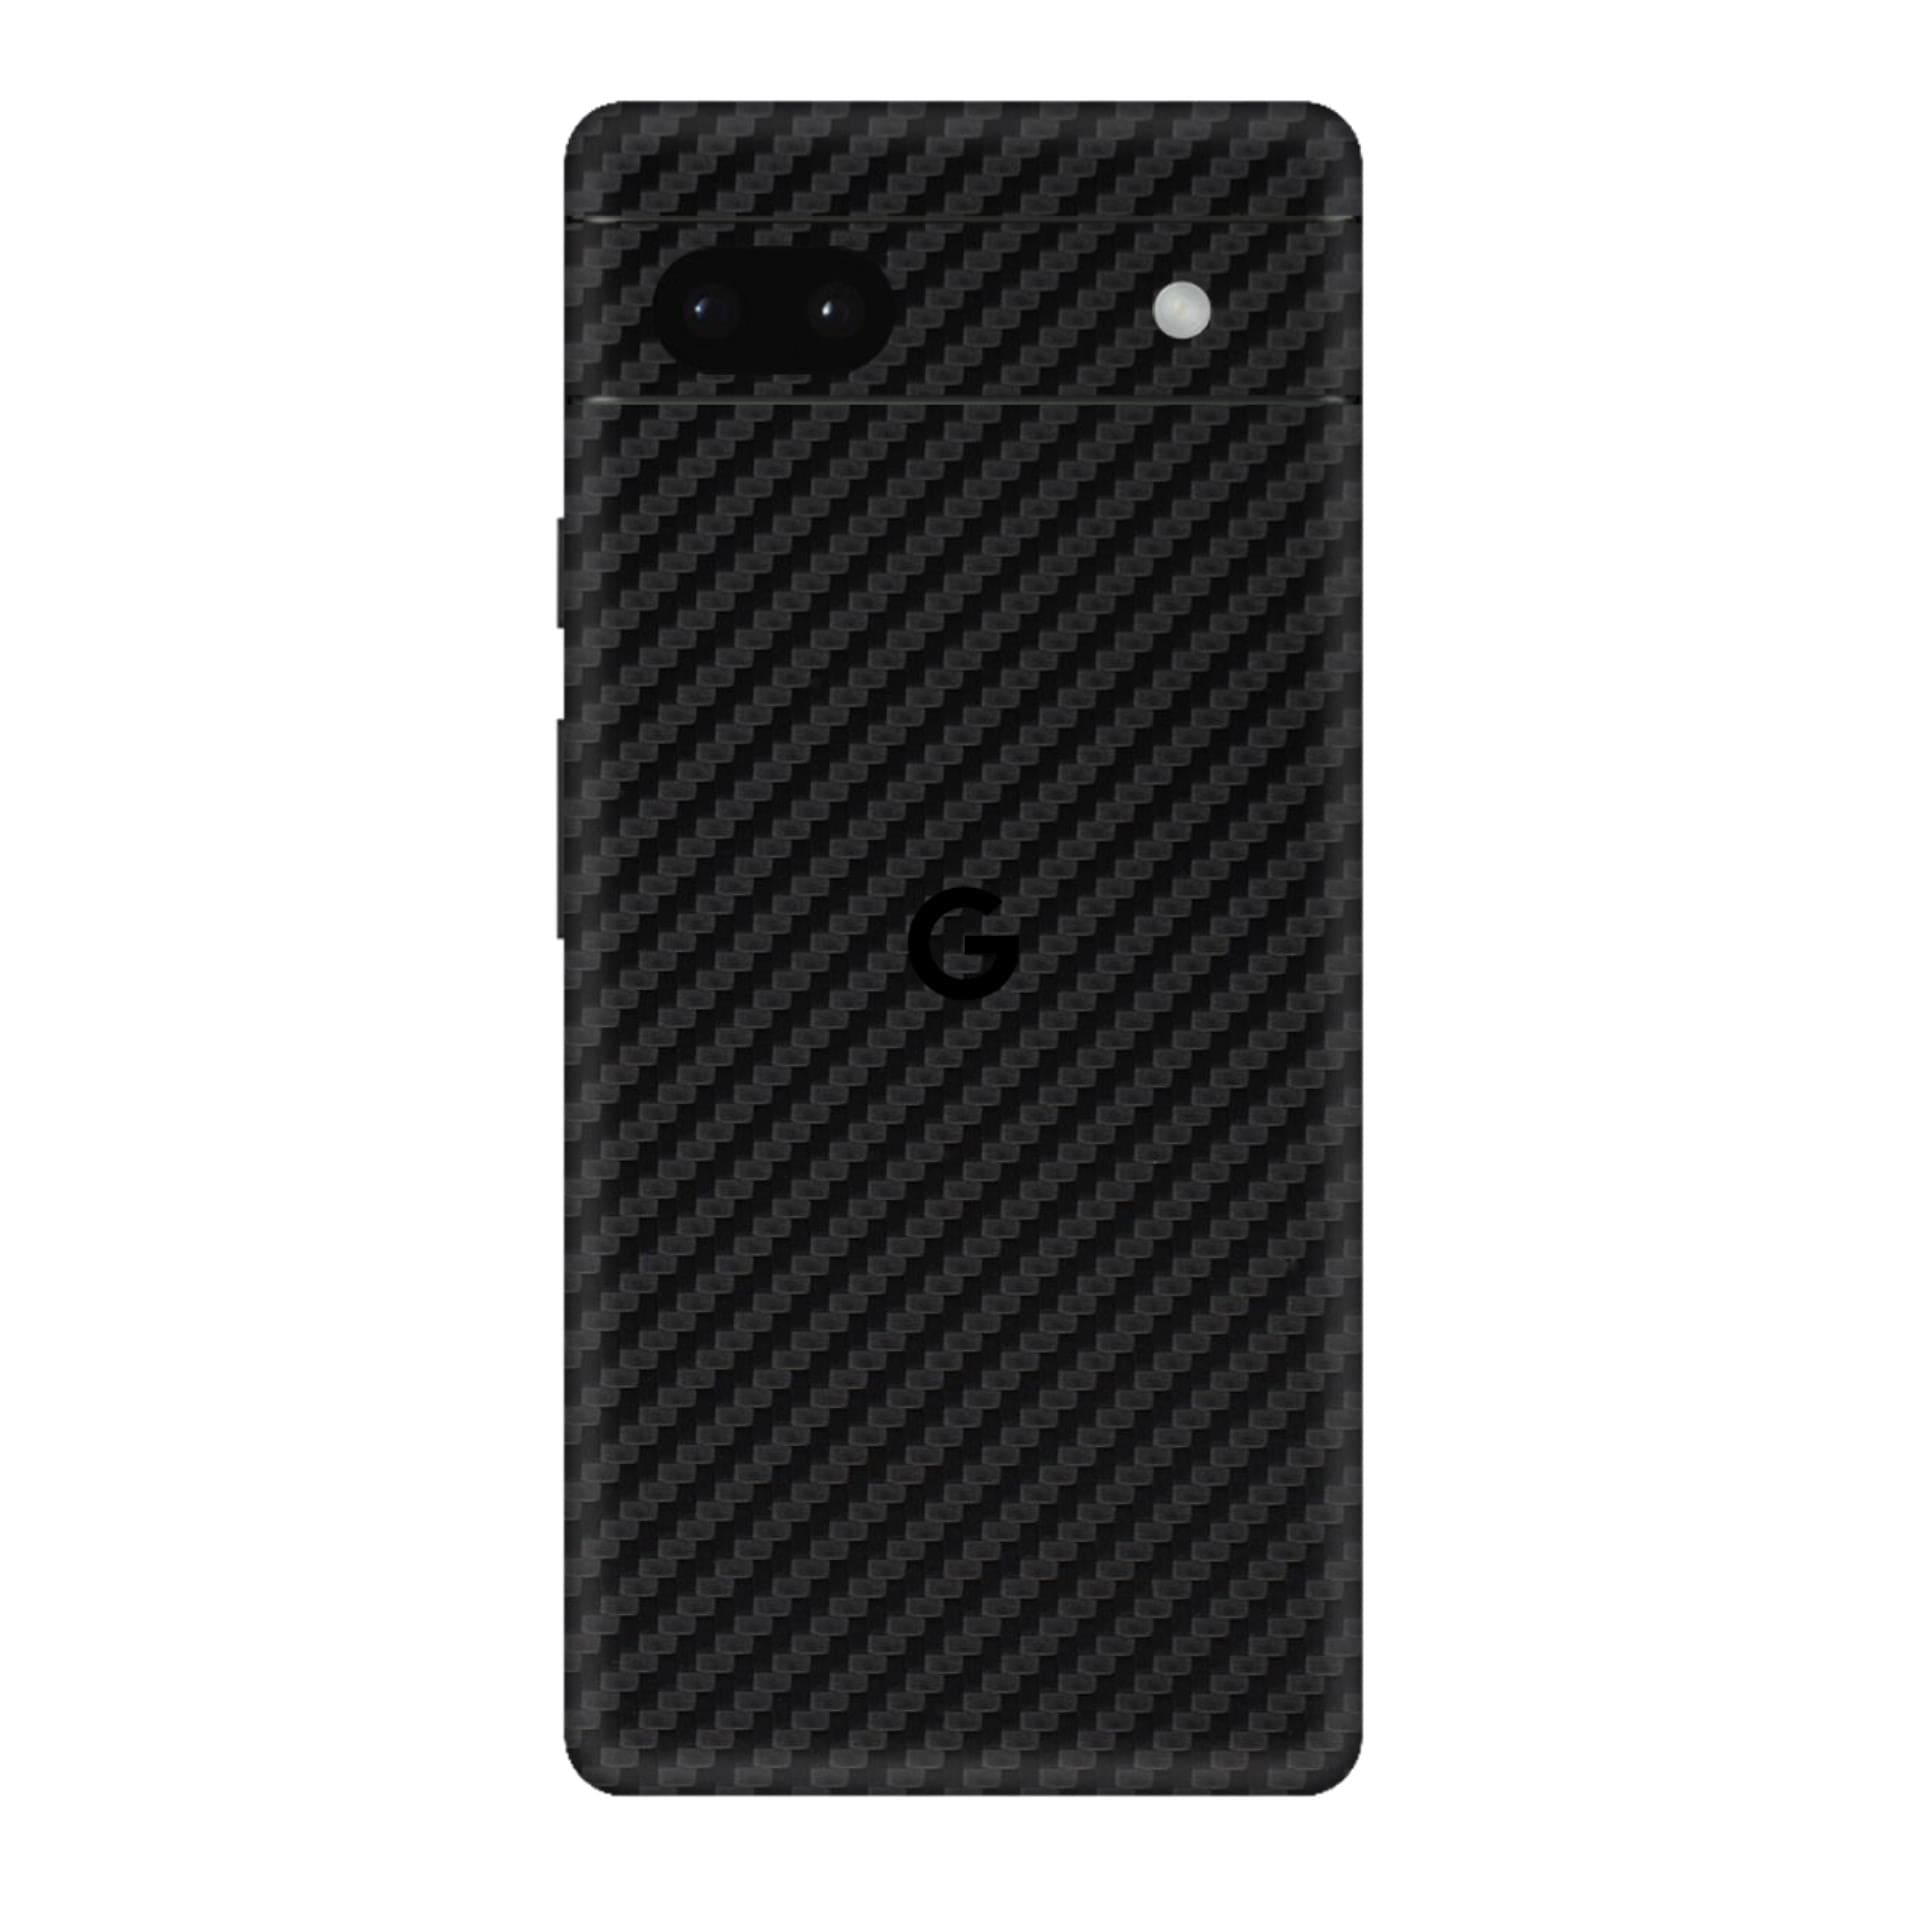 Google Pixel 6a Skins & Wraps